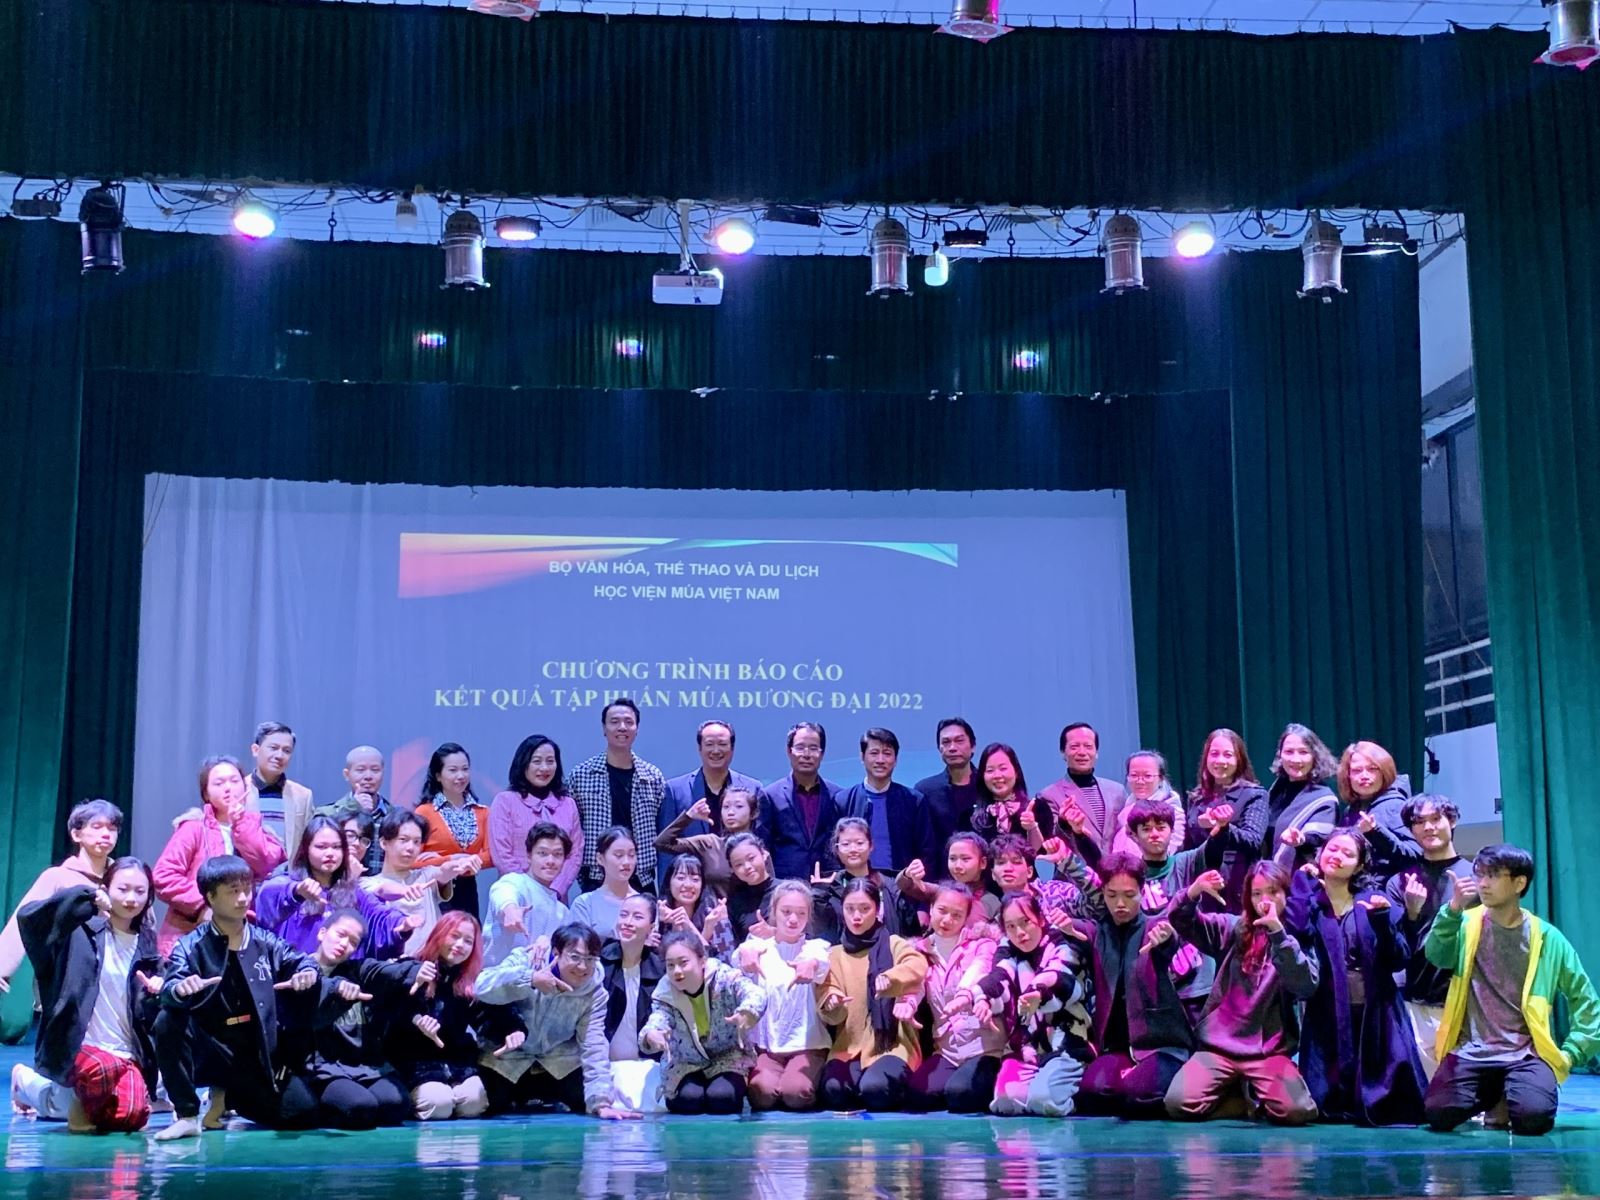 Chương trình Báo cáo kết quả tập huấn múa đương đại 2022